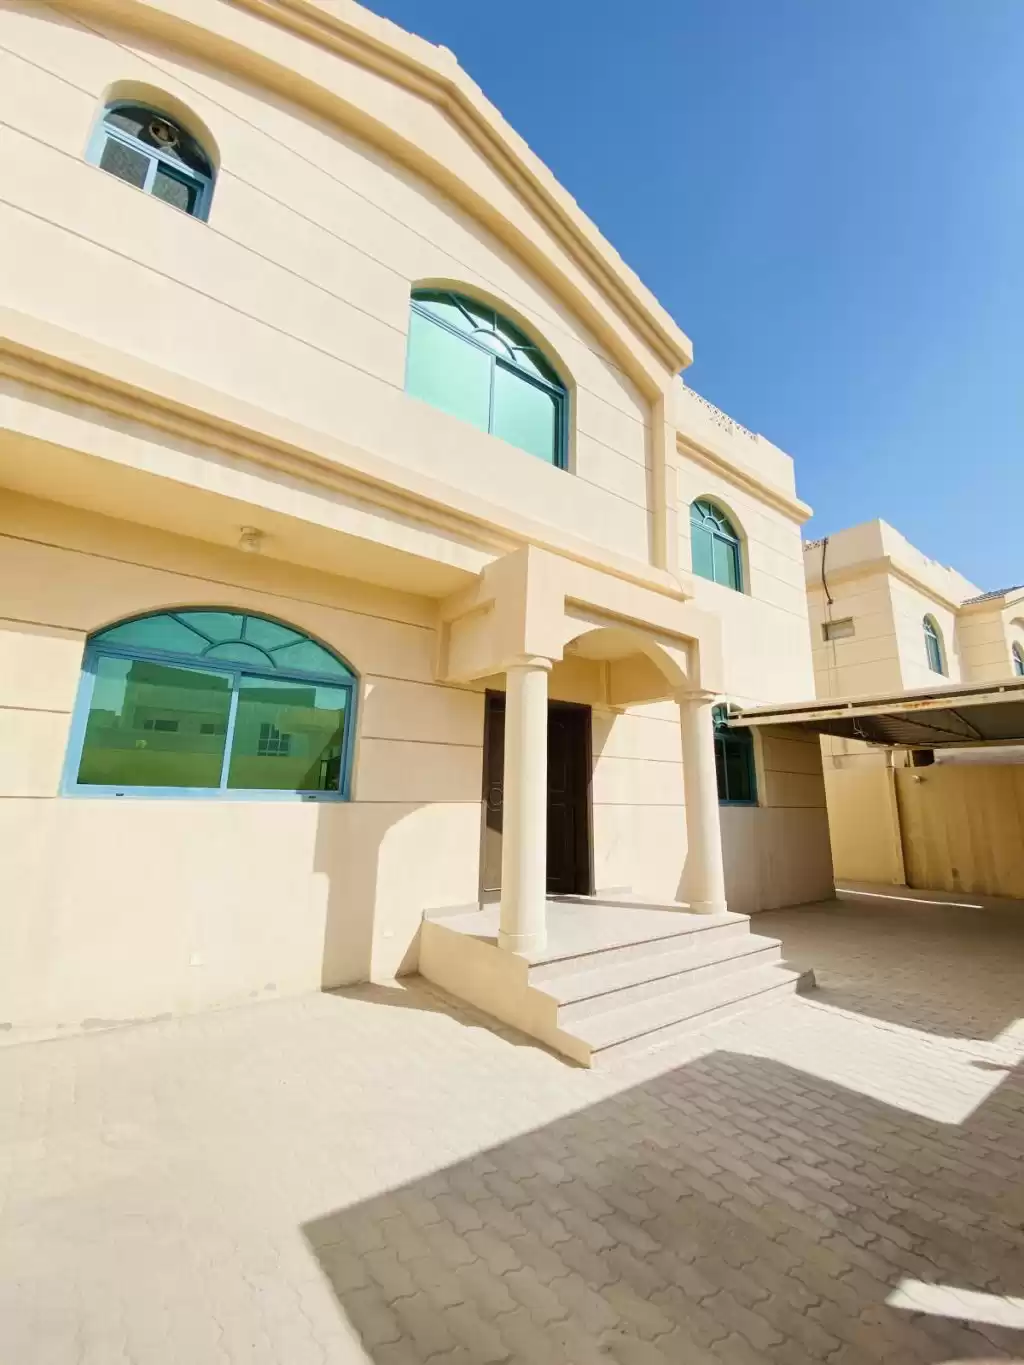 Résidentiel Propriété prête 5 chambres U / f Villa autonome  a louer au Al-Sadd , Doha #12249 - 1  image 